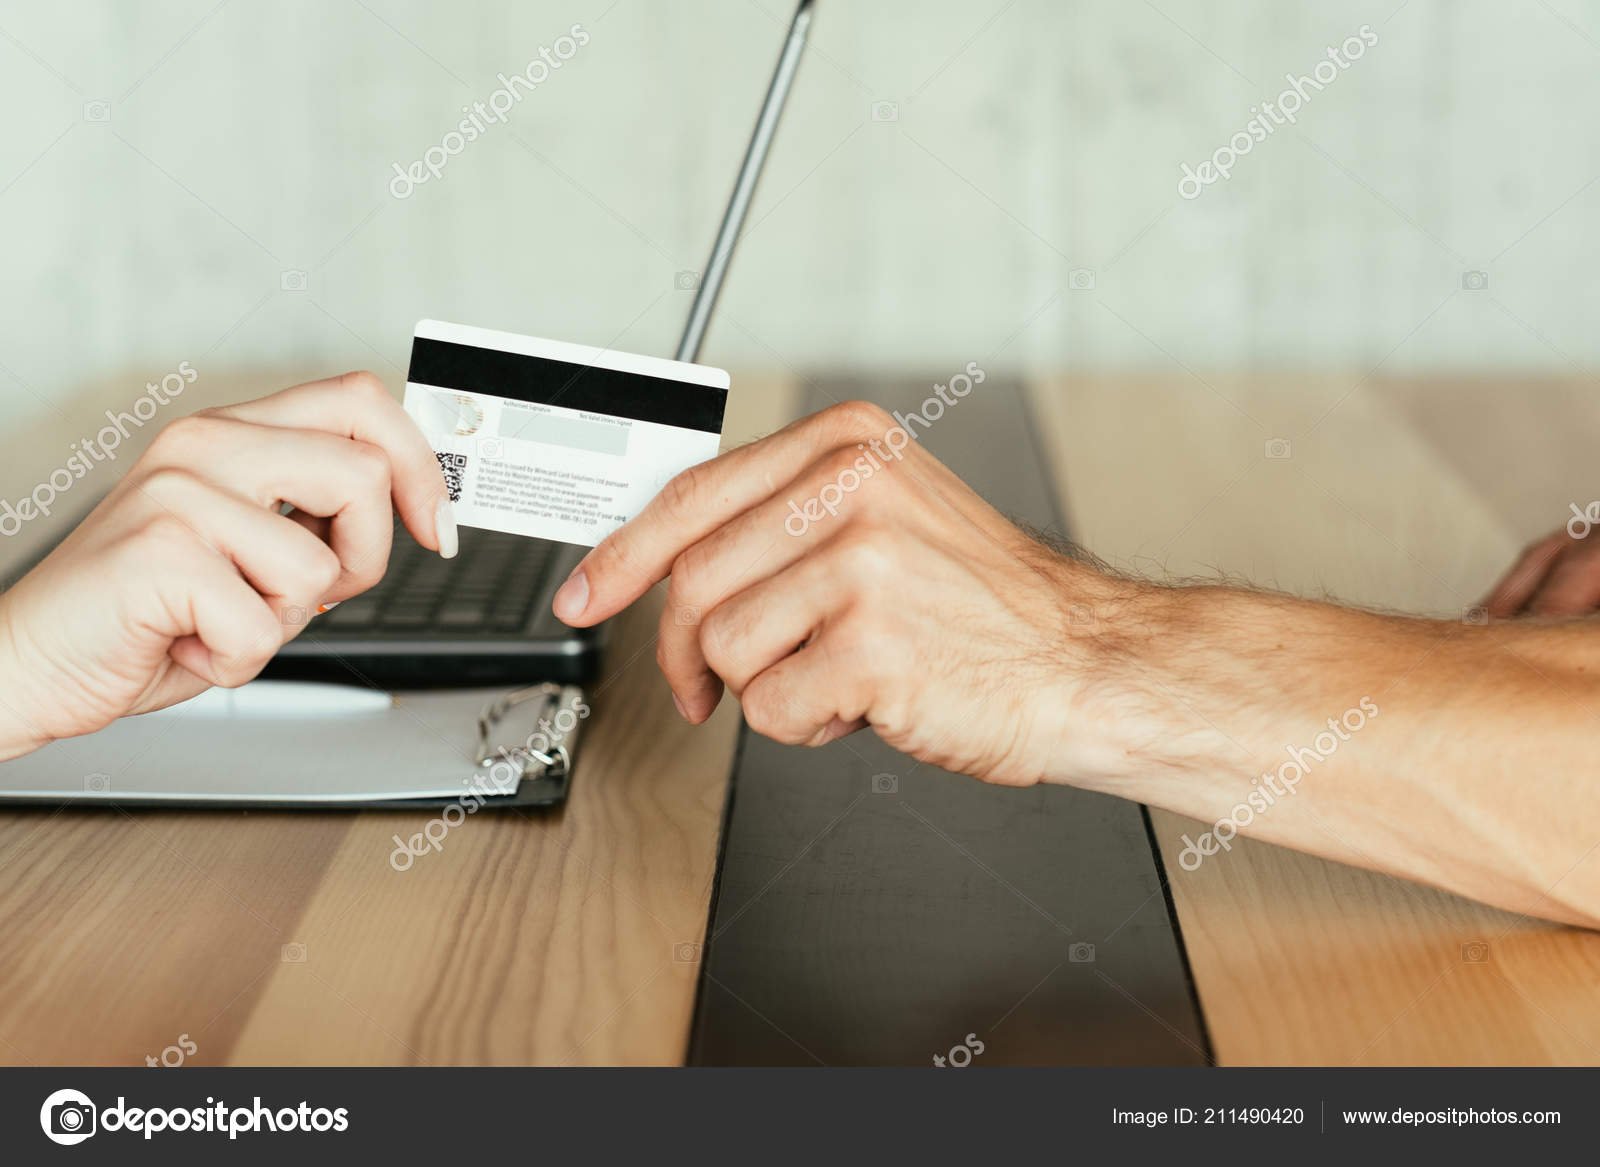 koelkast Aggregaat Hassy Online betaling geld transactie bankkaart ⬇ Stockfoto, rechtenvrije foto  door © golubovy #211490420